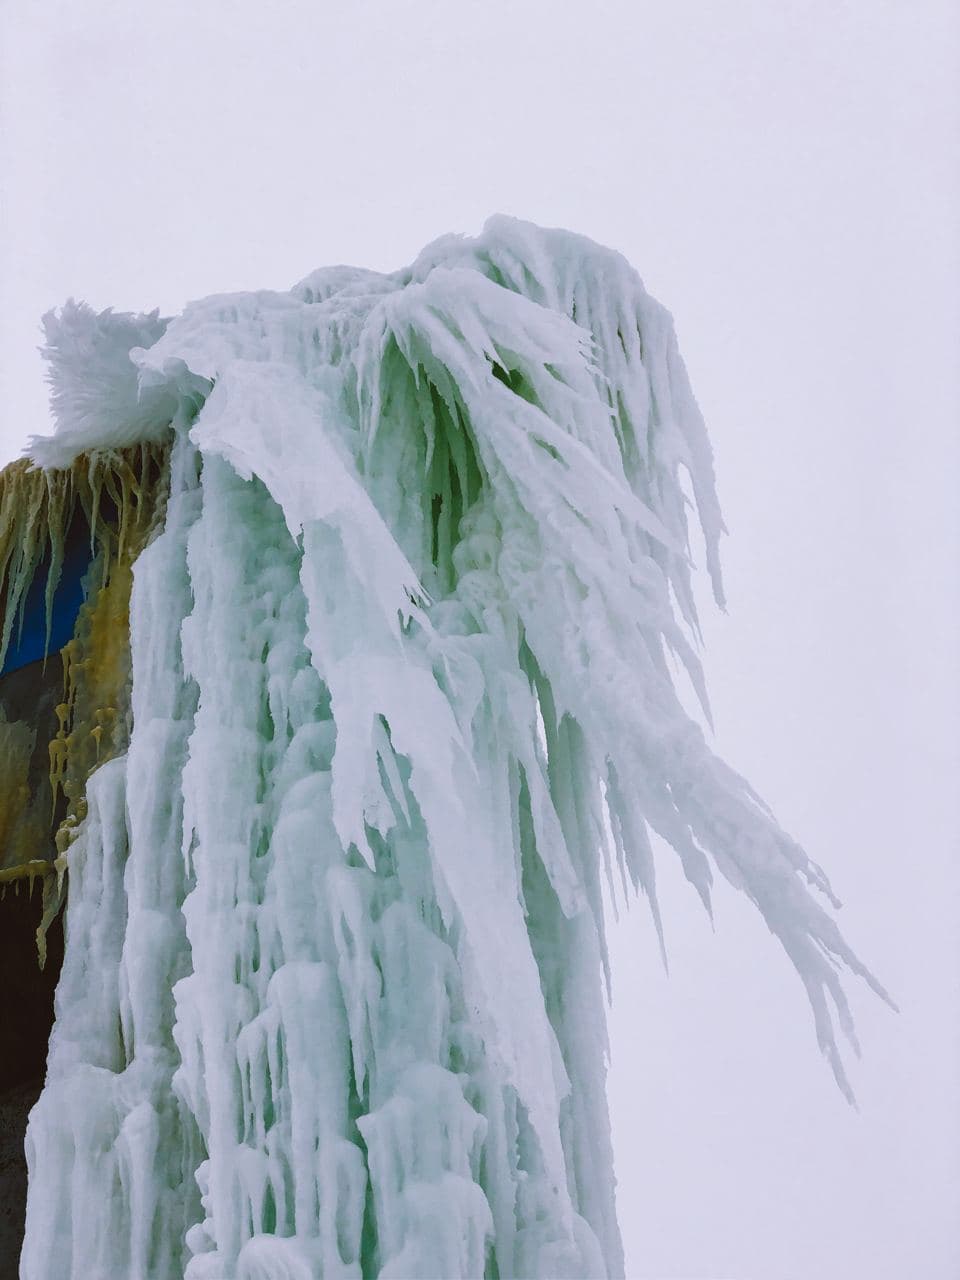 Фото дня: водонапорная башня стала ледяным арт-объектом на Воложинщине